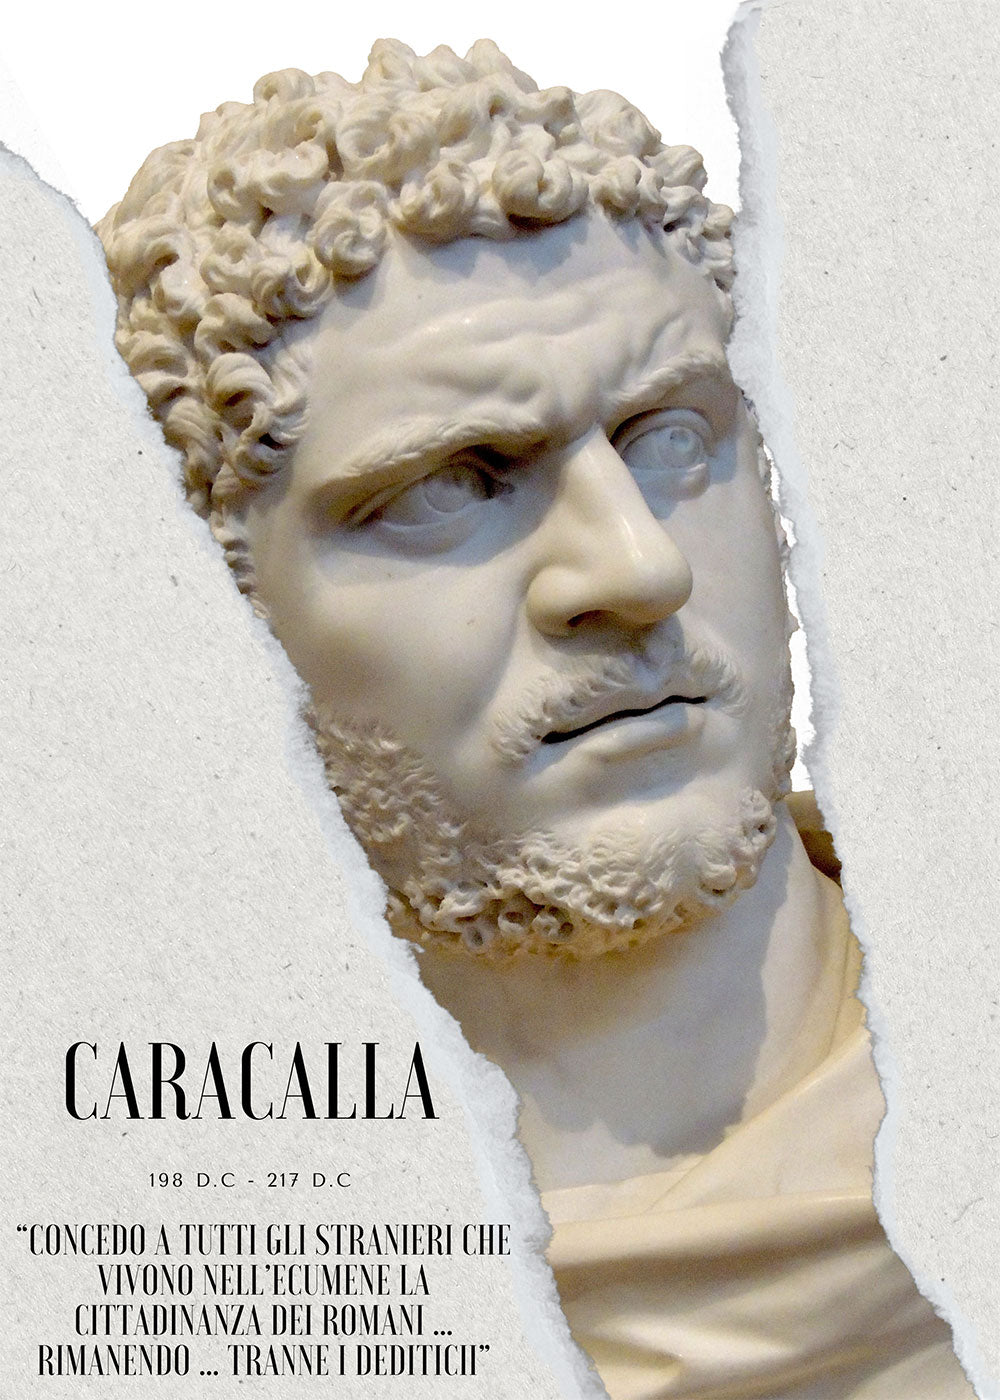 Caracalla - Marcus Aurelius Severus Antoninus Pius Augustus